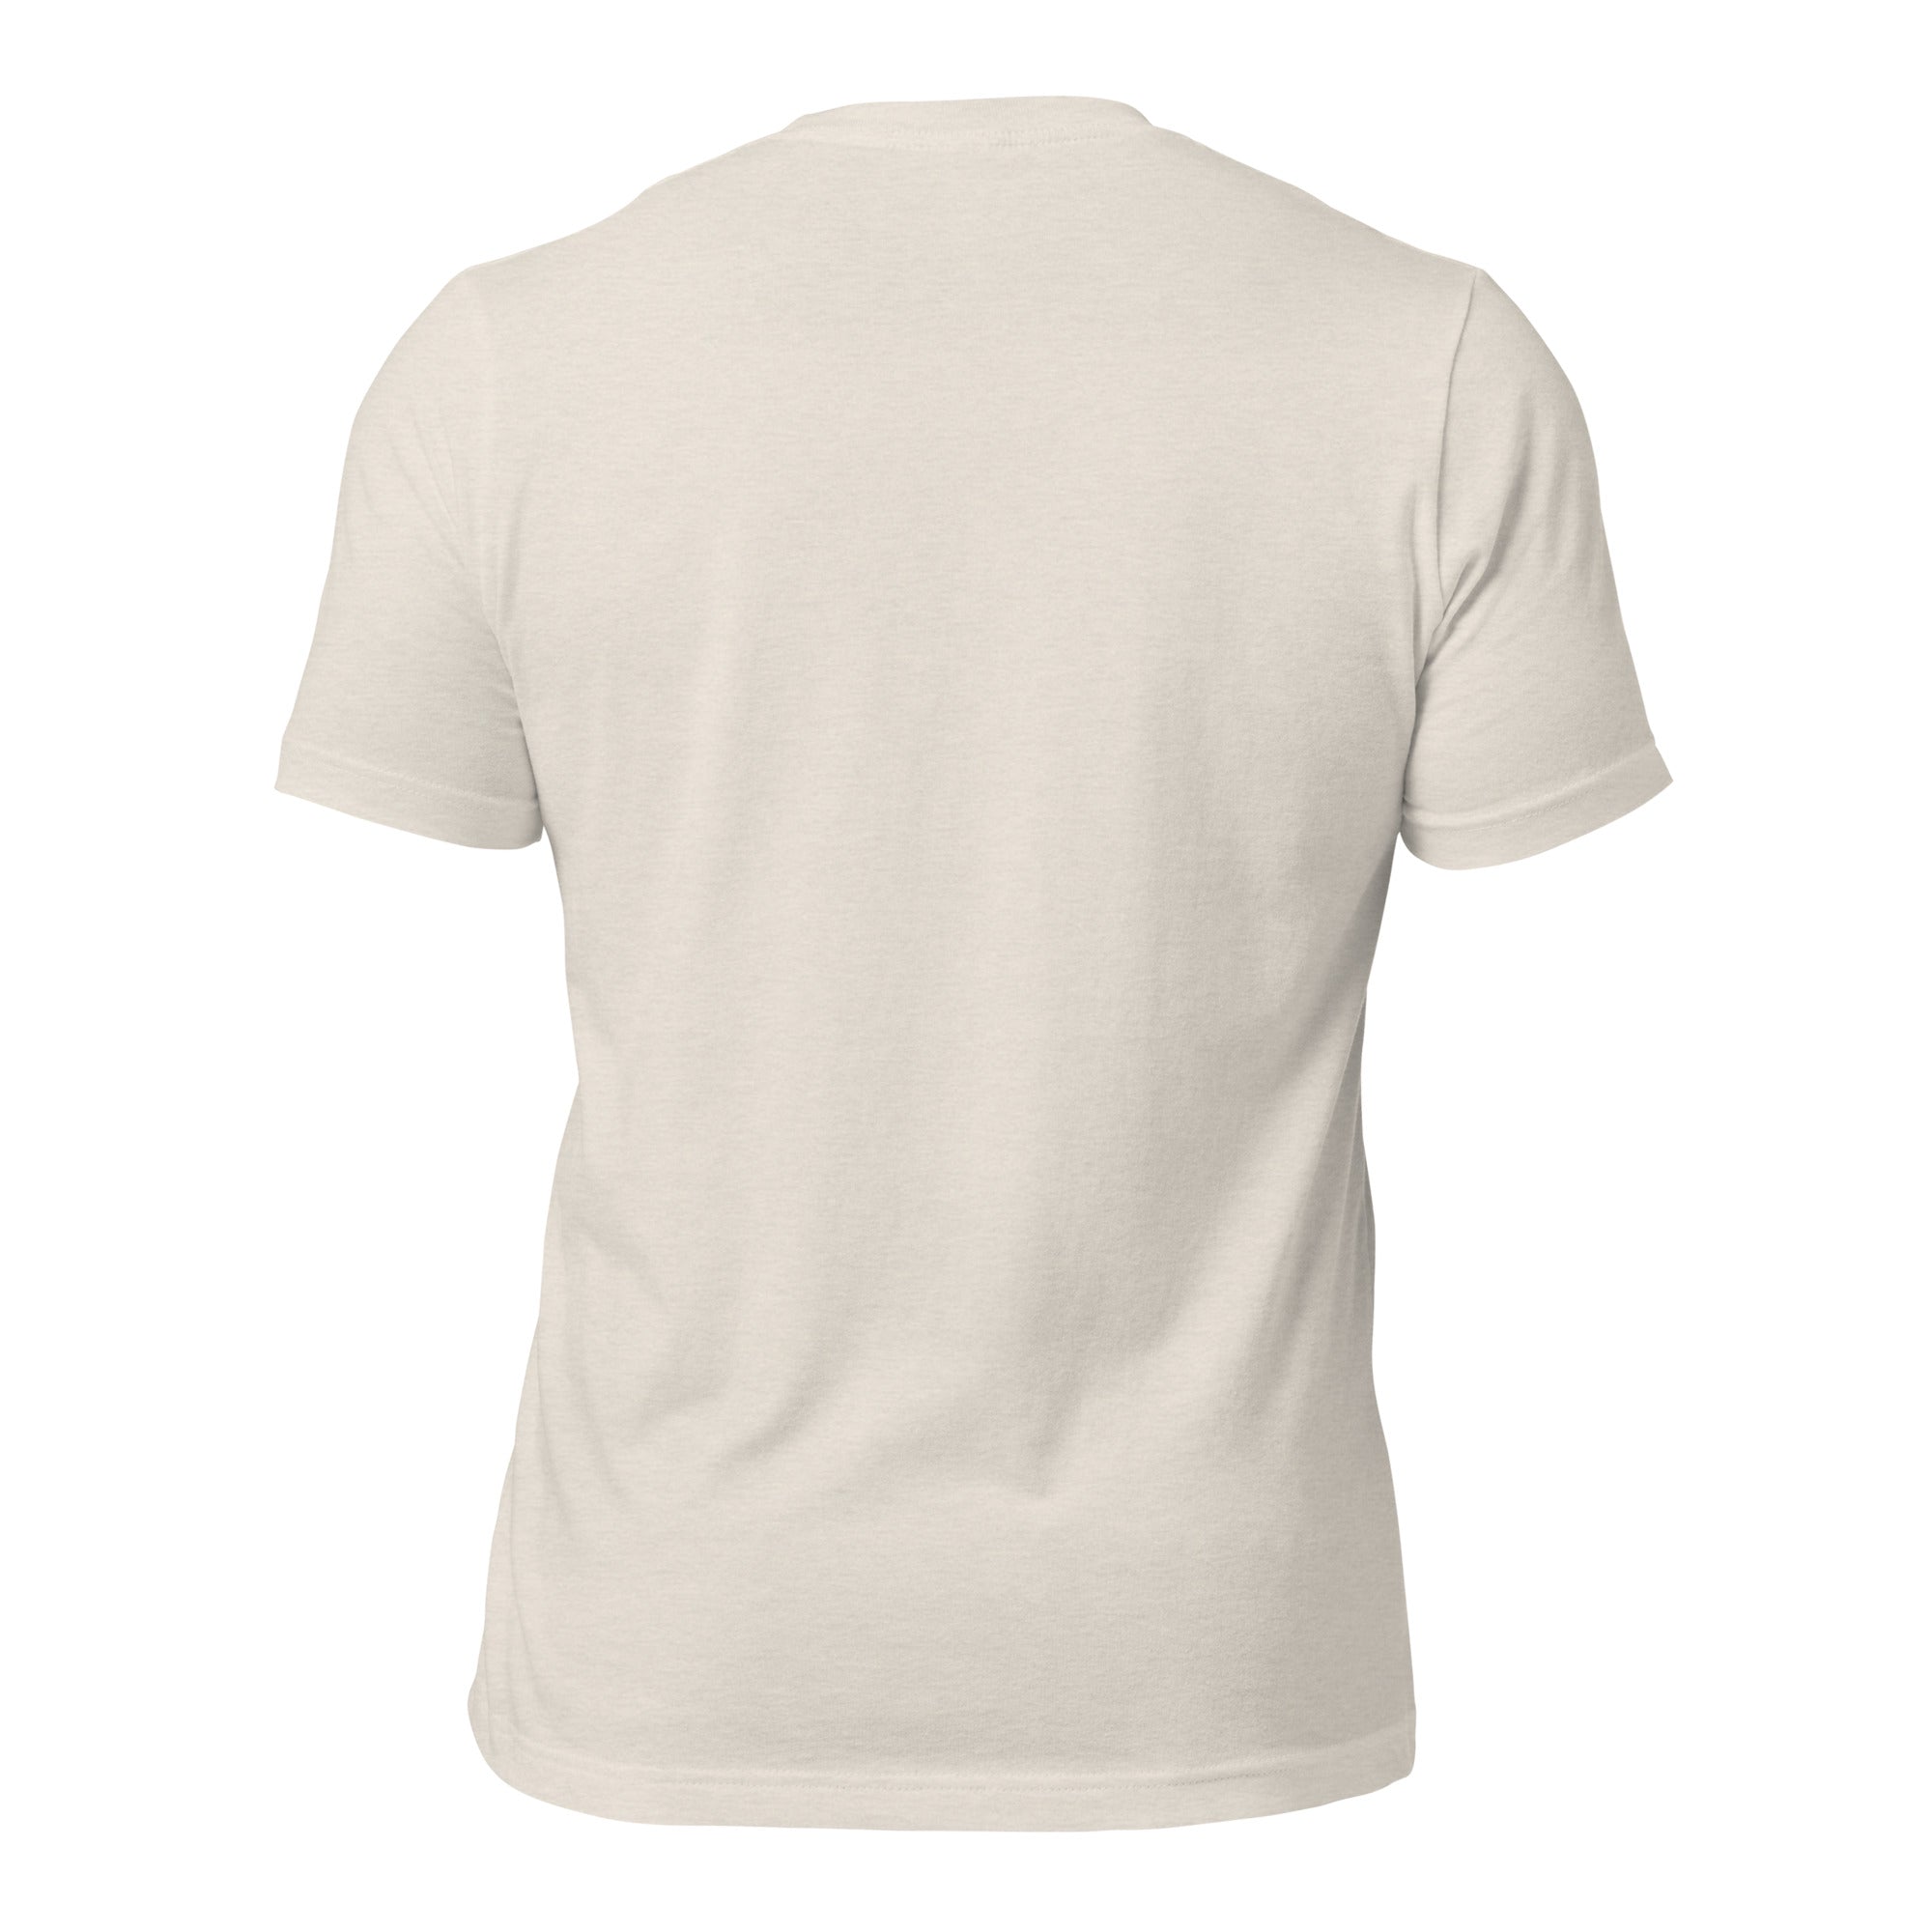 T-shirt en coton unisexe Make Bouillabaisse Not War Oh Bonne Mer sur couleurs chinées claires